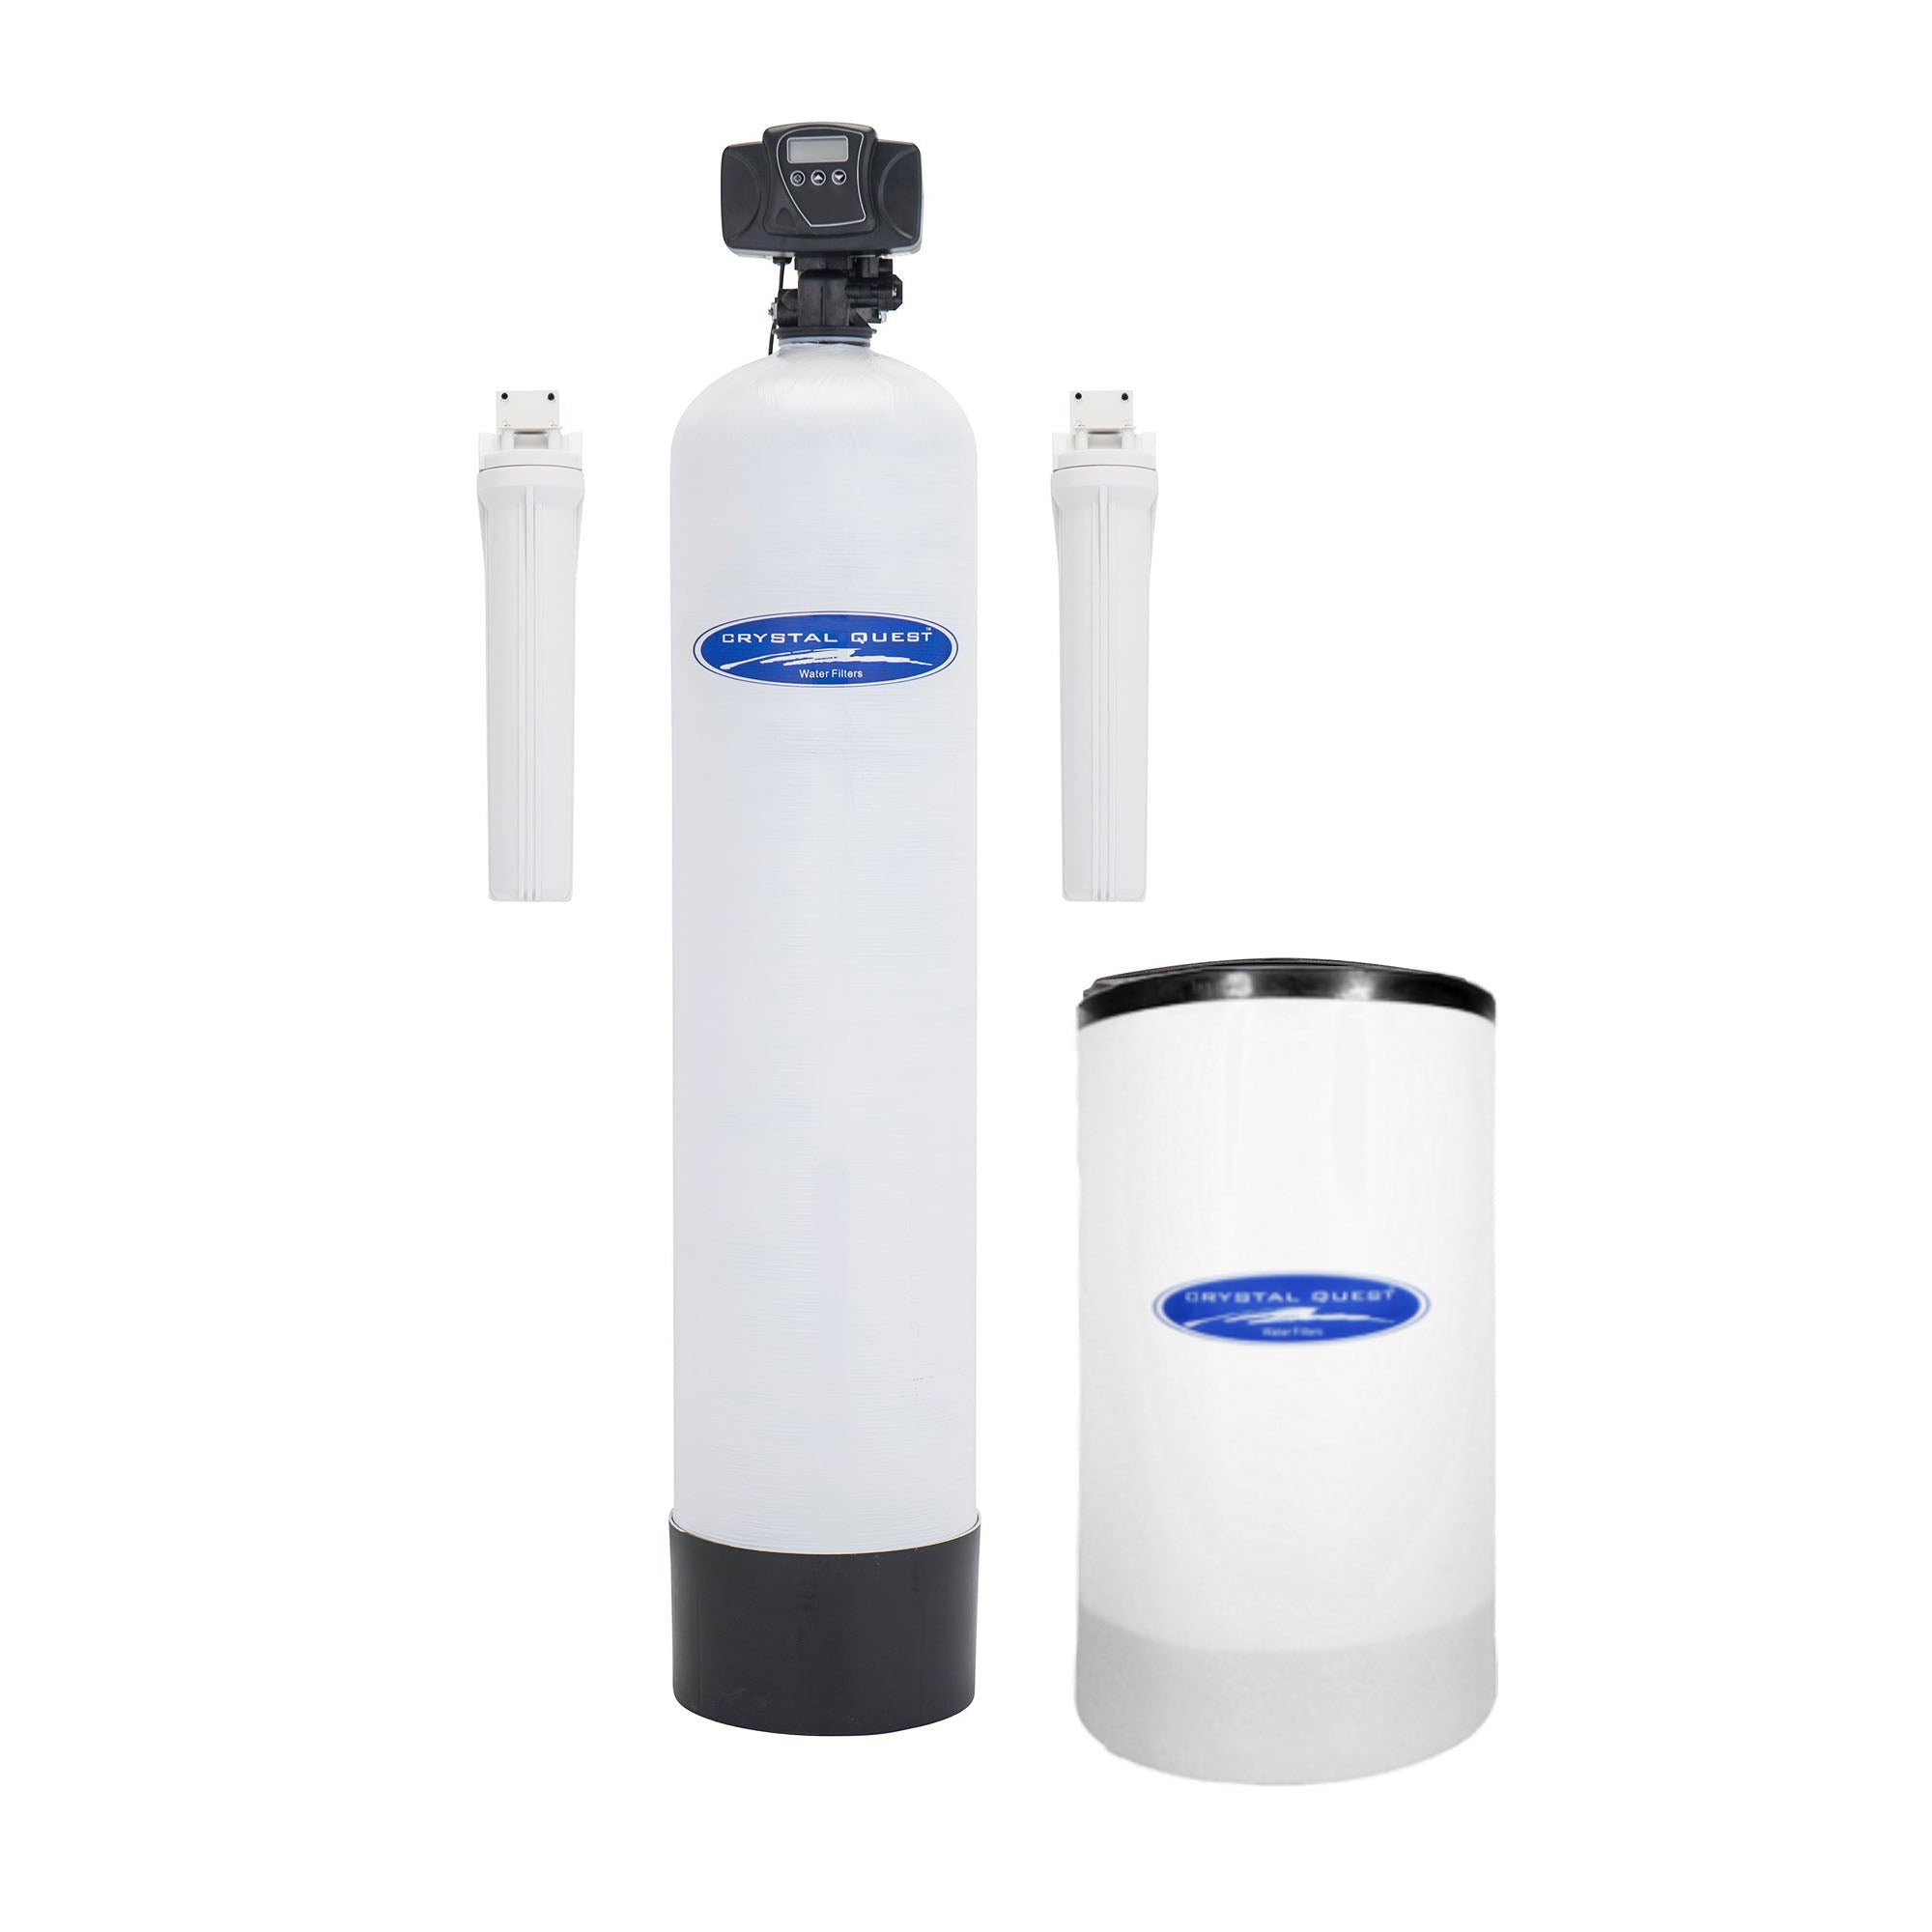 Standalone / Fiberglass / 1.5 Tannin Whole House Water Filter - Whole House Water Filters - Crystal Quest